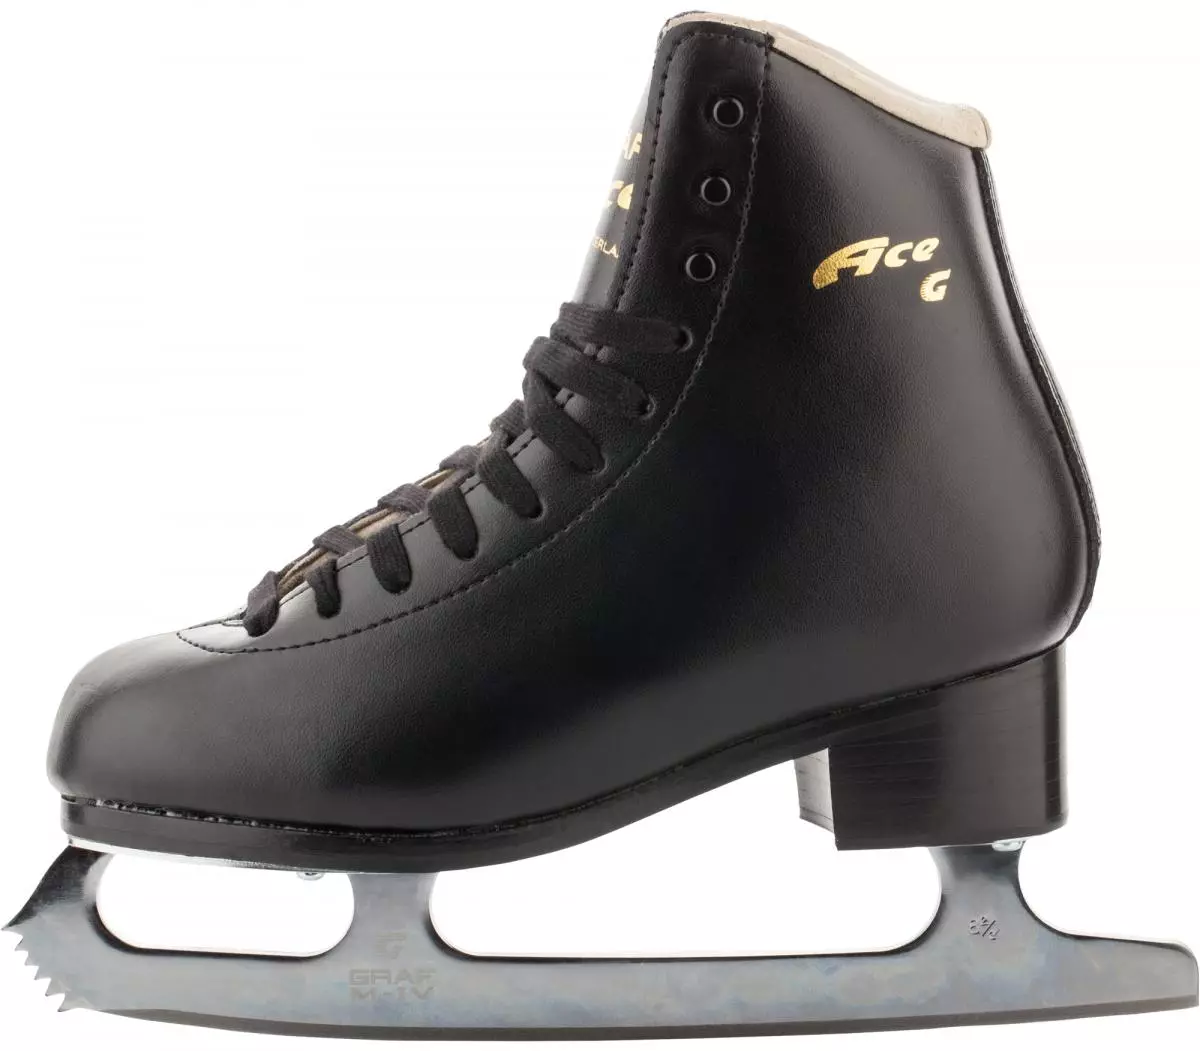 Patins profissionais: Quais são os patins semi-profissionais diferentes do amador? Modelos femininos e masculinos, fabricantes. Seleção de melhores patins 8428_12